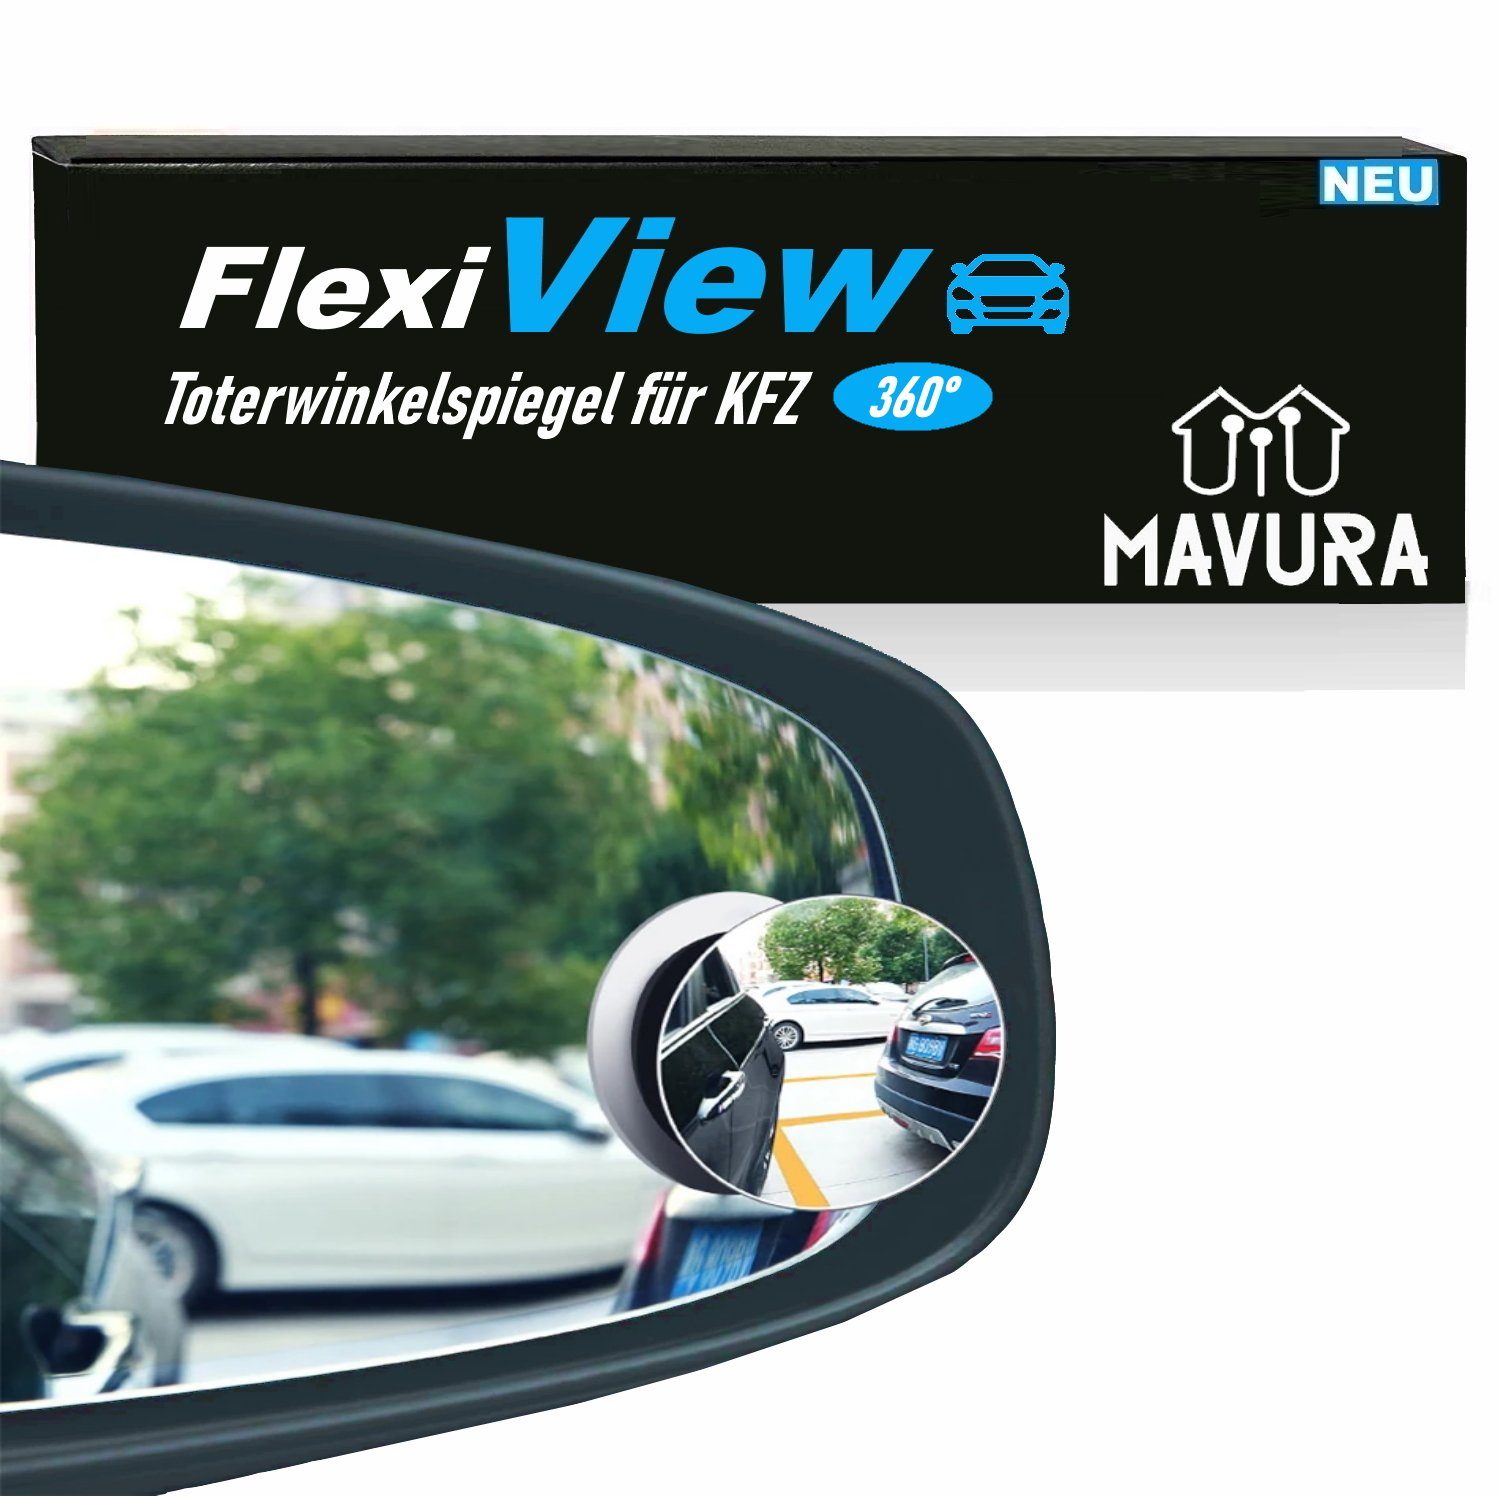 [2er Außenspiegel Klebe MAVURA Set] Spiegel Aufkleber 50mm Spiegel verstellbarer FlexiView Auto Spiegel Toter Winkel Weitwinkelspiegel), 360° Autospiegel (Zusatz